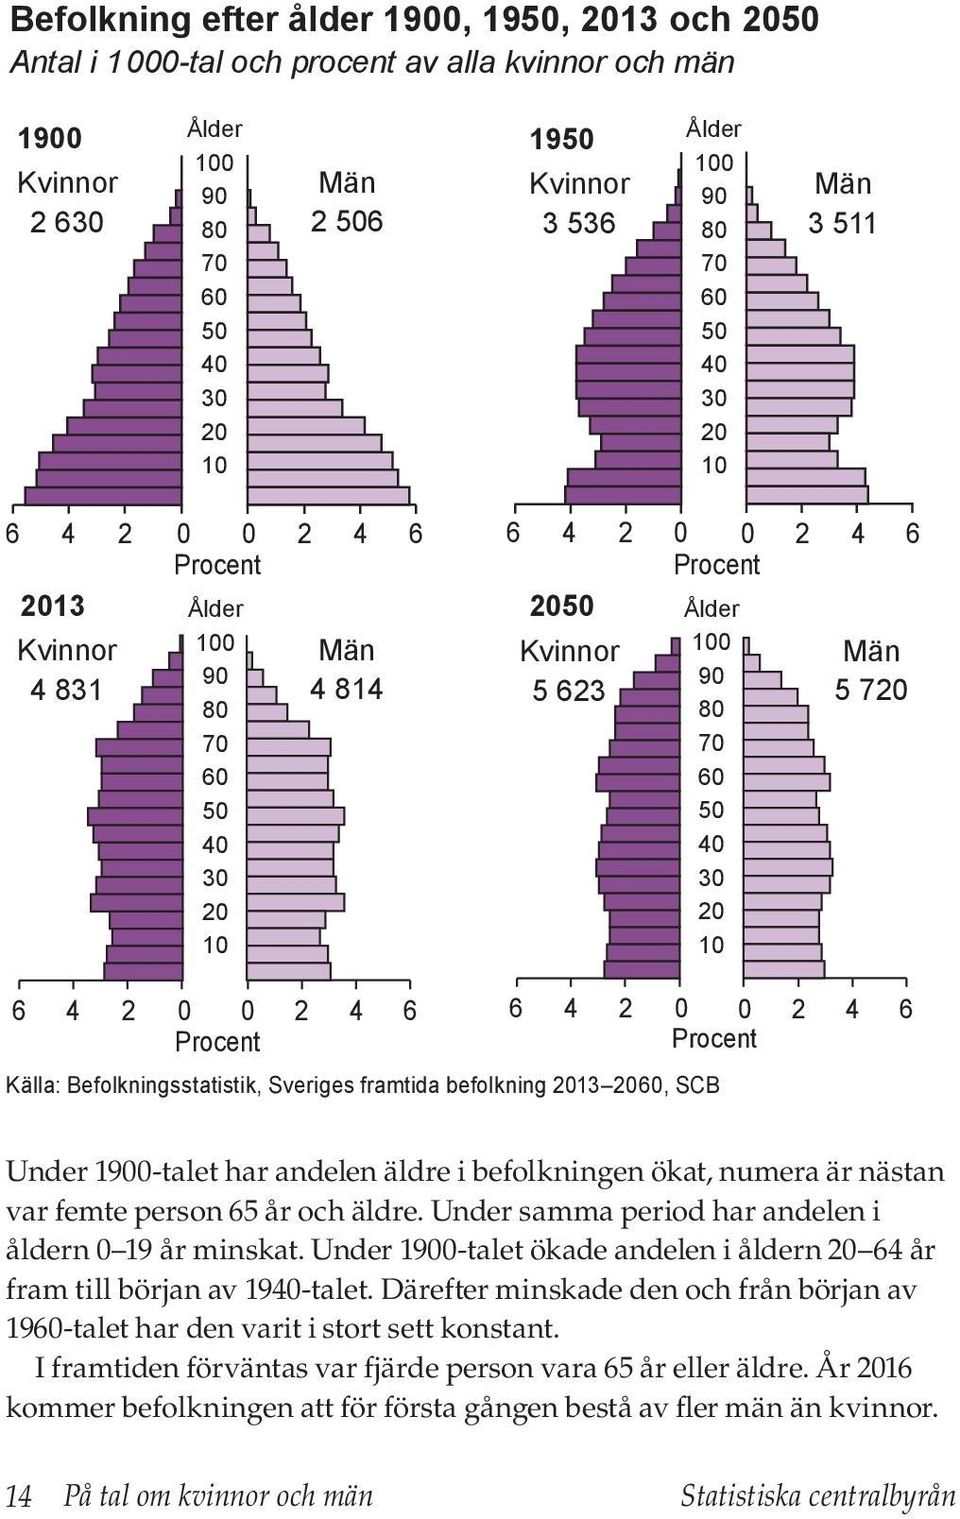 20 10 Män 5 720 6 4 2 0 0 2 4 6 Procent Källa: Befolkningsstatistik, Sveriges framtida befolkning 2013 2060, SCB 6 4 2 0 0 2 4 6 Procent Under 1900-talet har andelen äldre i befolkningen ökat, numera